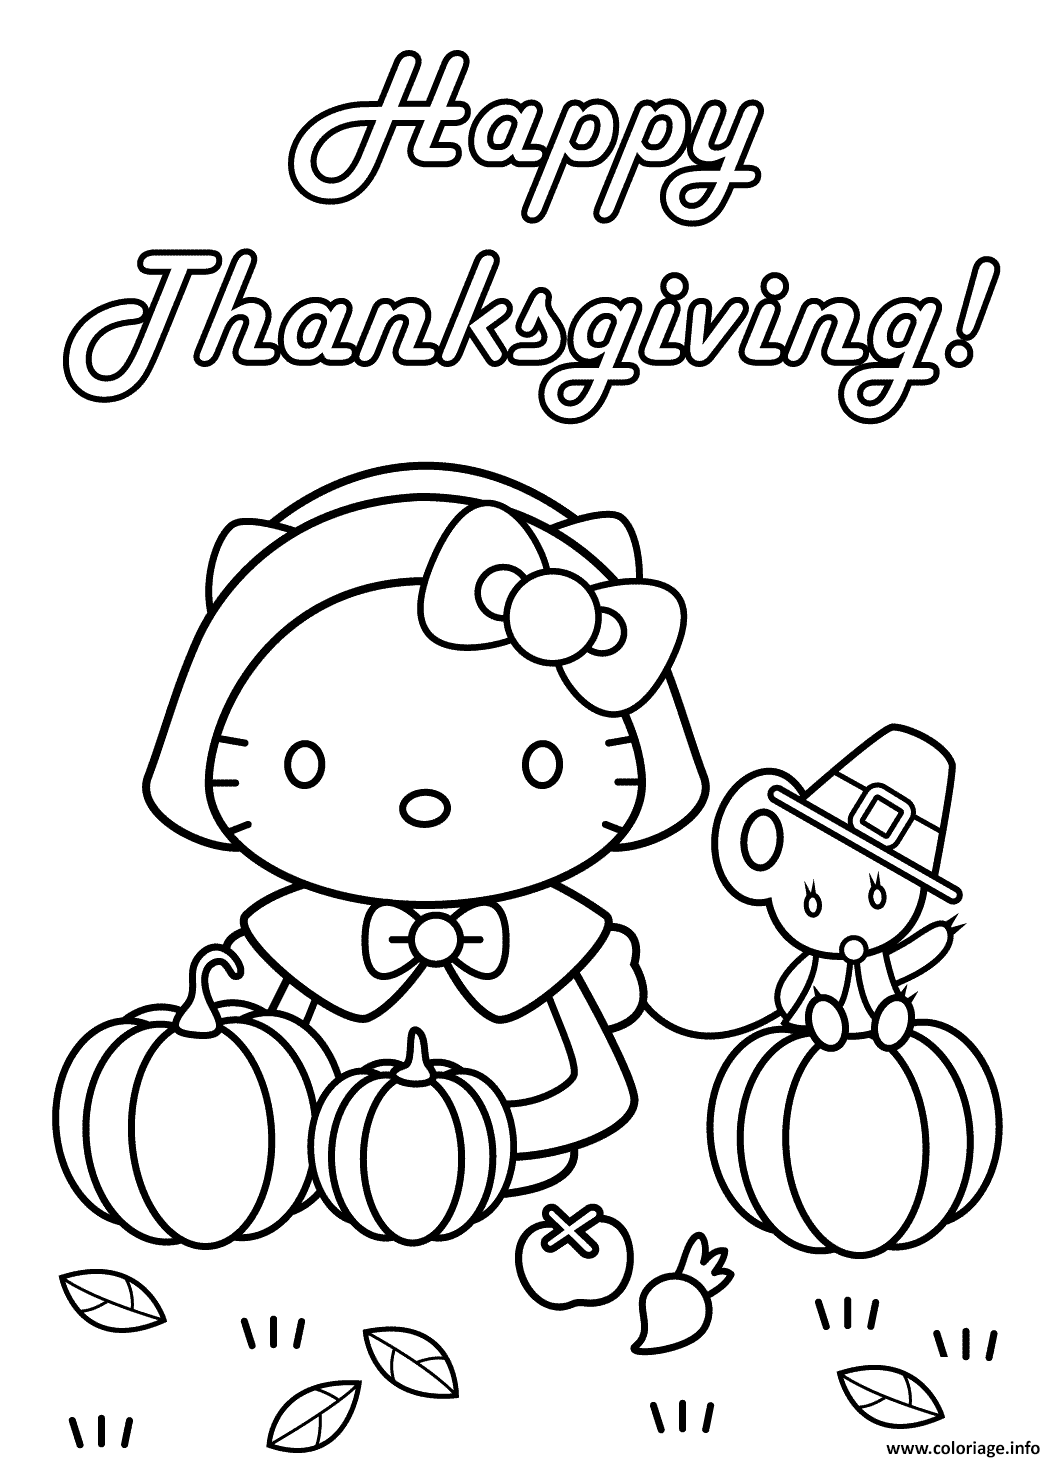 Dessin hello kitty happy thanksgiving citrouille avec une couris Coloriage Gratuit à Imprimer